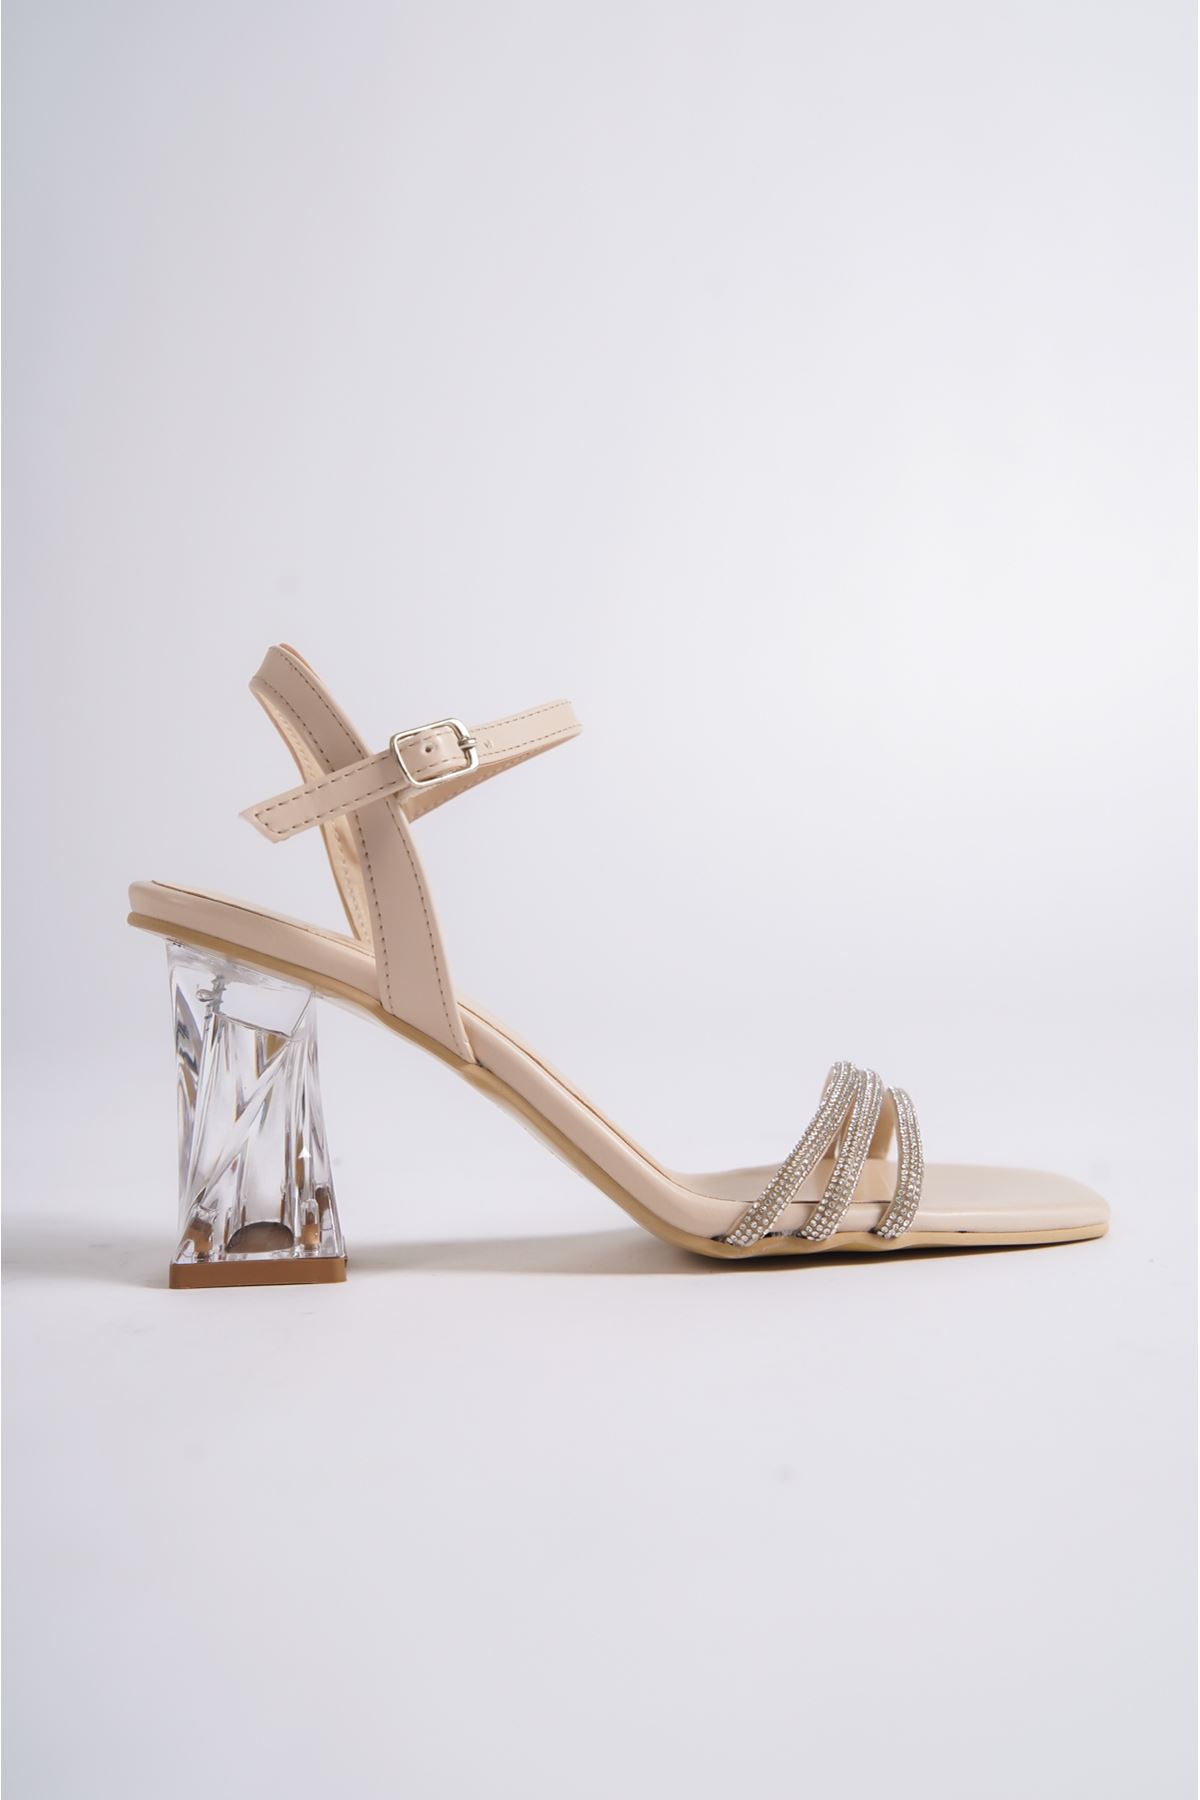 Stephan Bej Taşlı Şeffaf Topuklu Kadın Ayakkabı